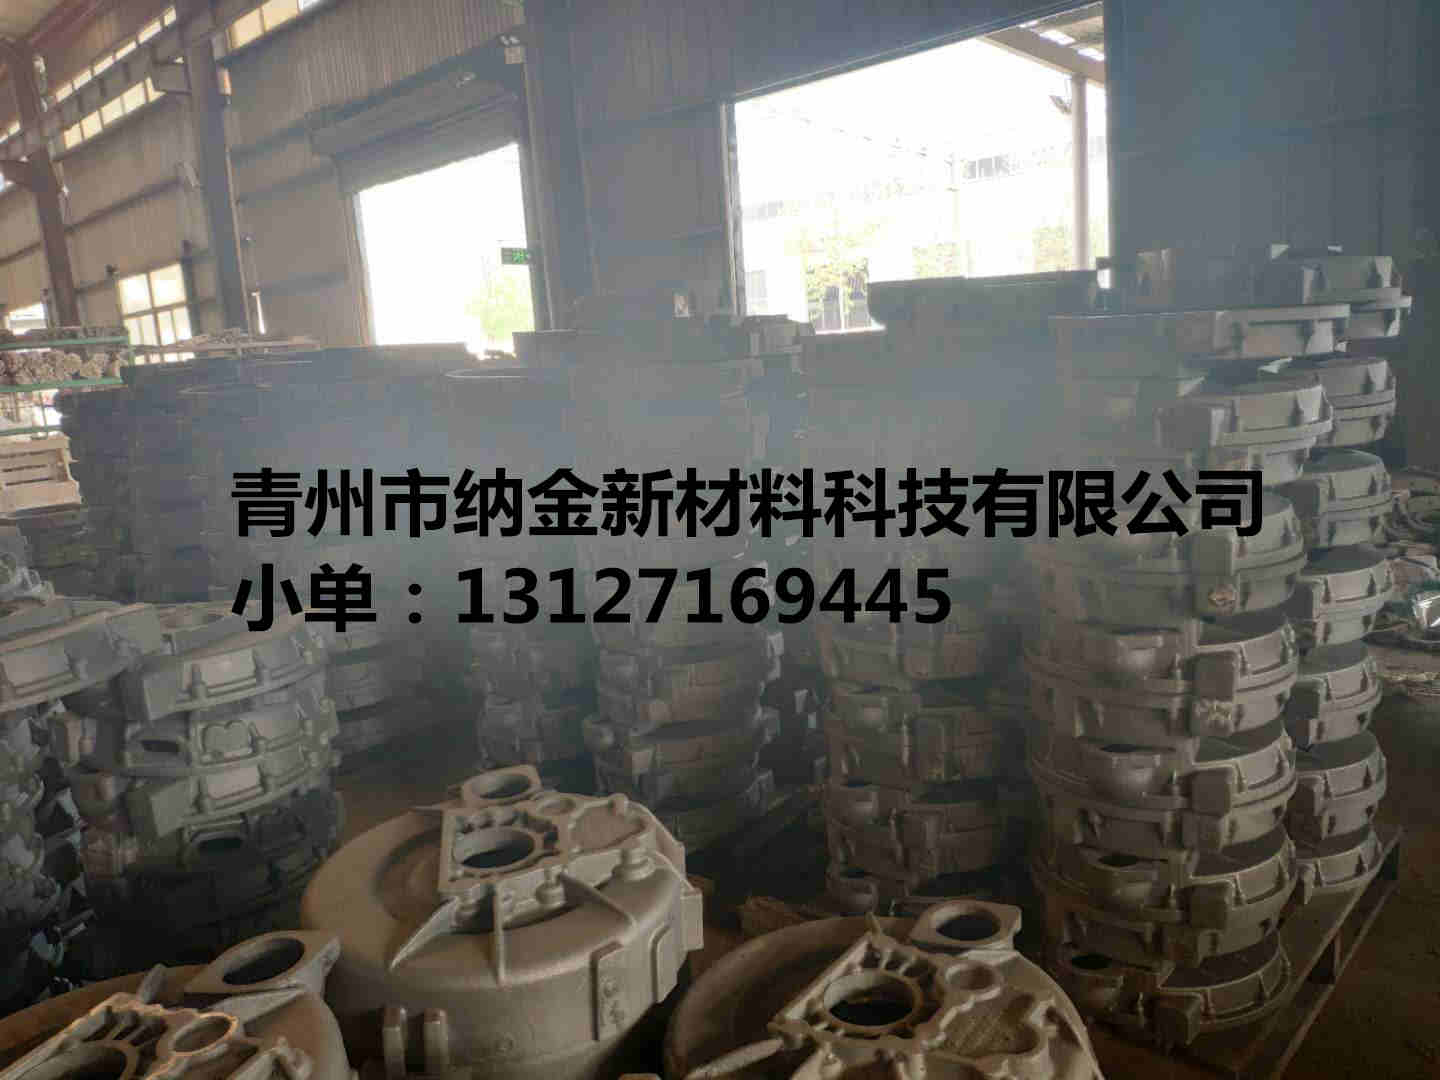 山东潍坊青州厂家生产定做铸造件批发